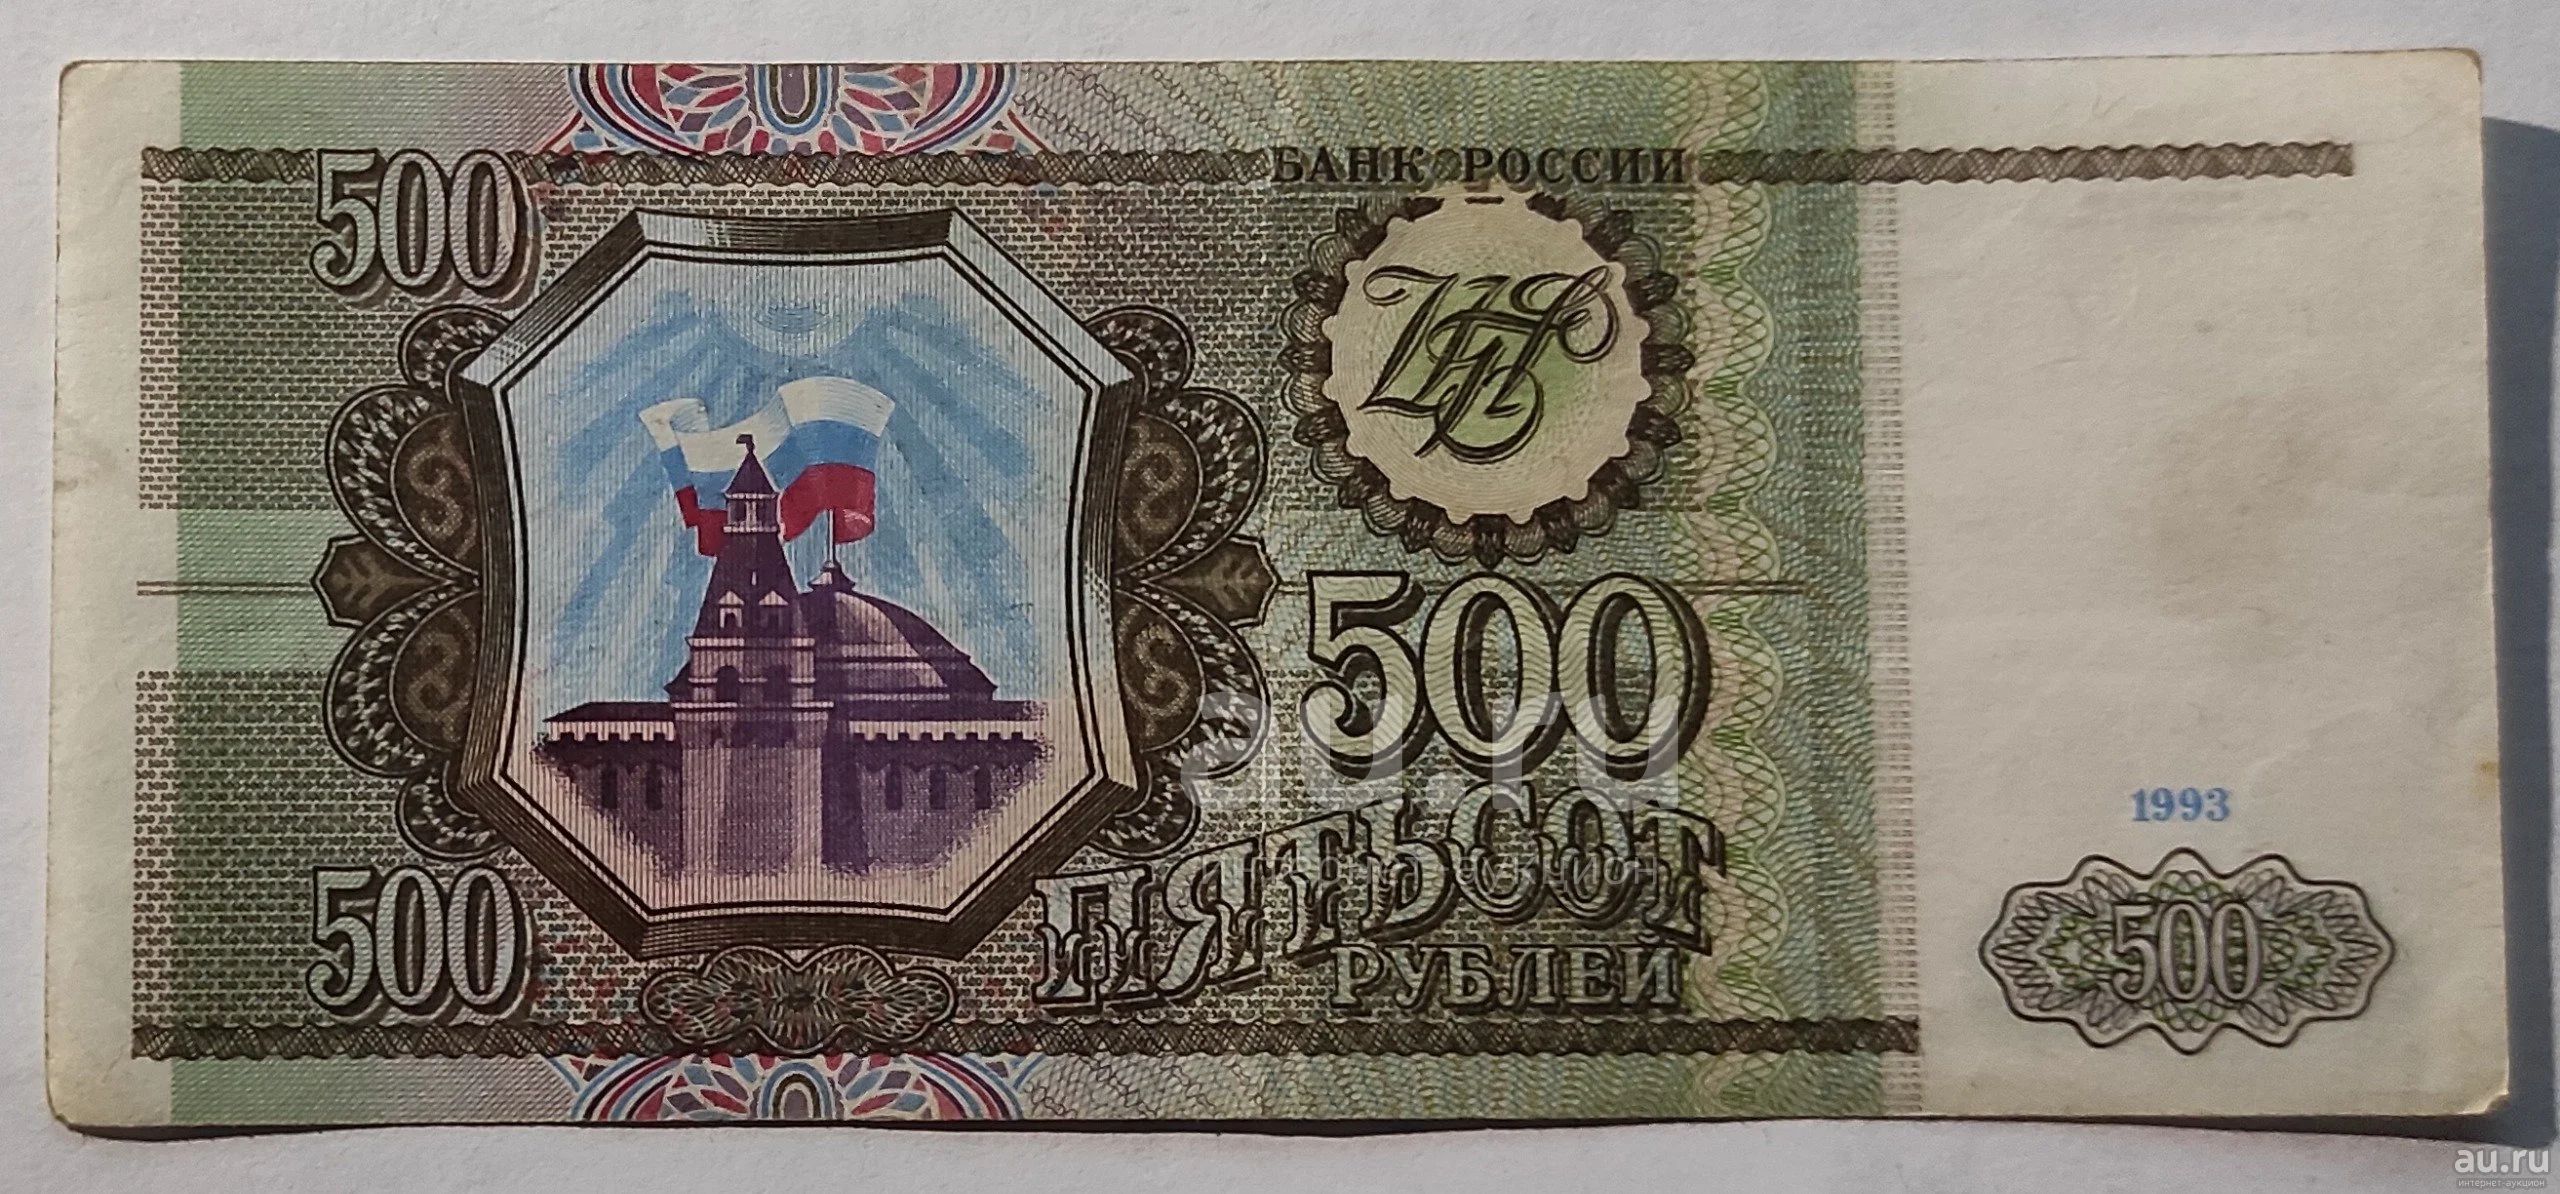 60 500 в рублях. 200 И 500 руб 1993.